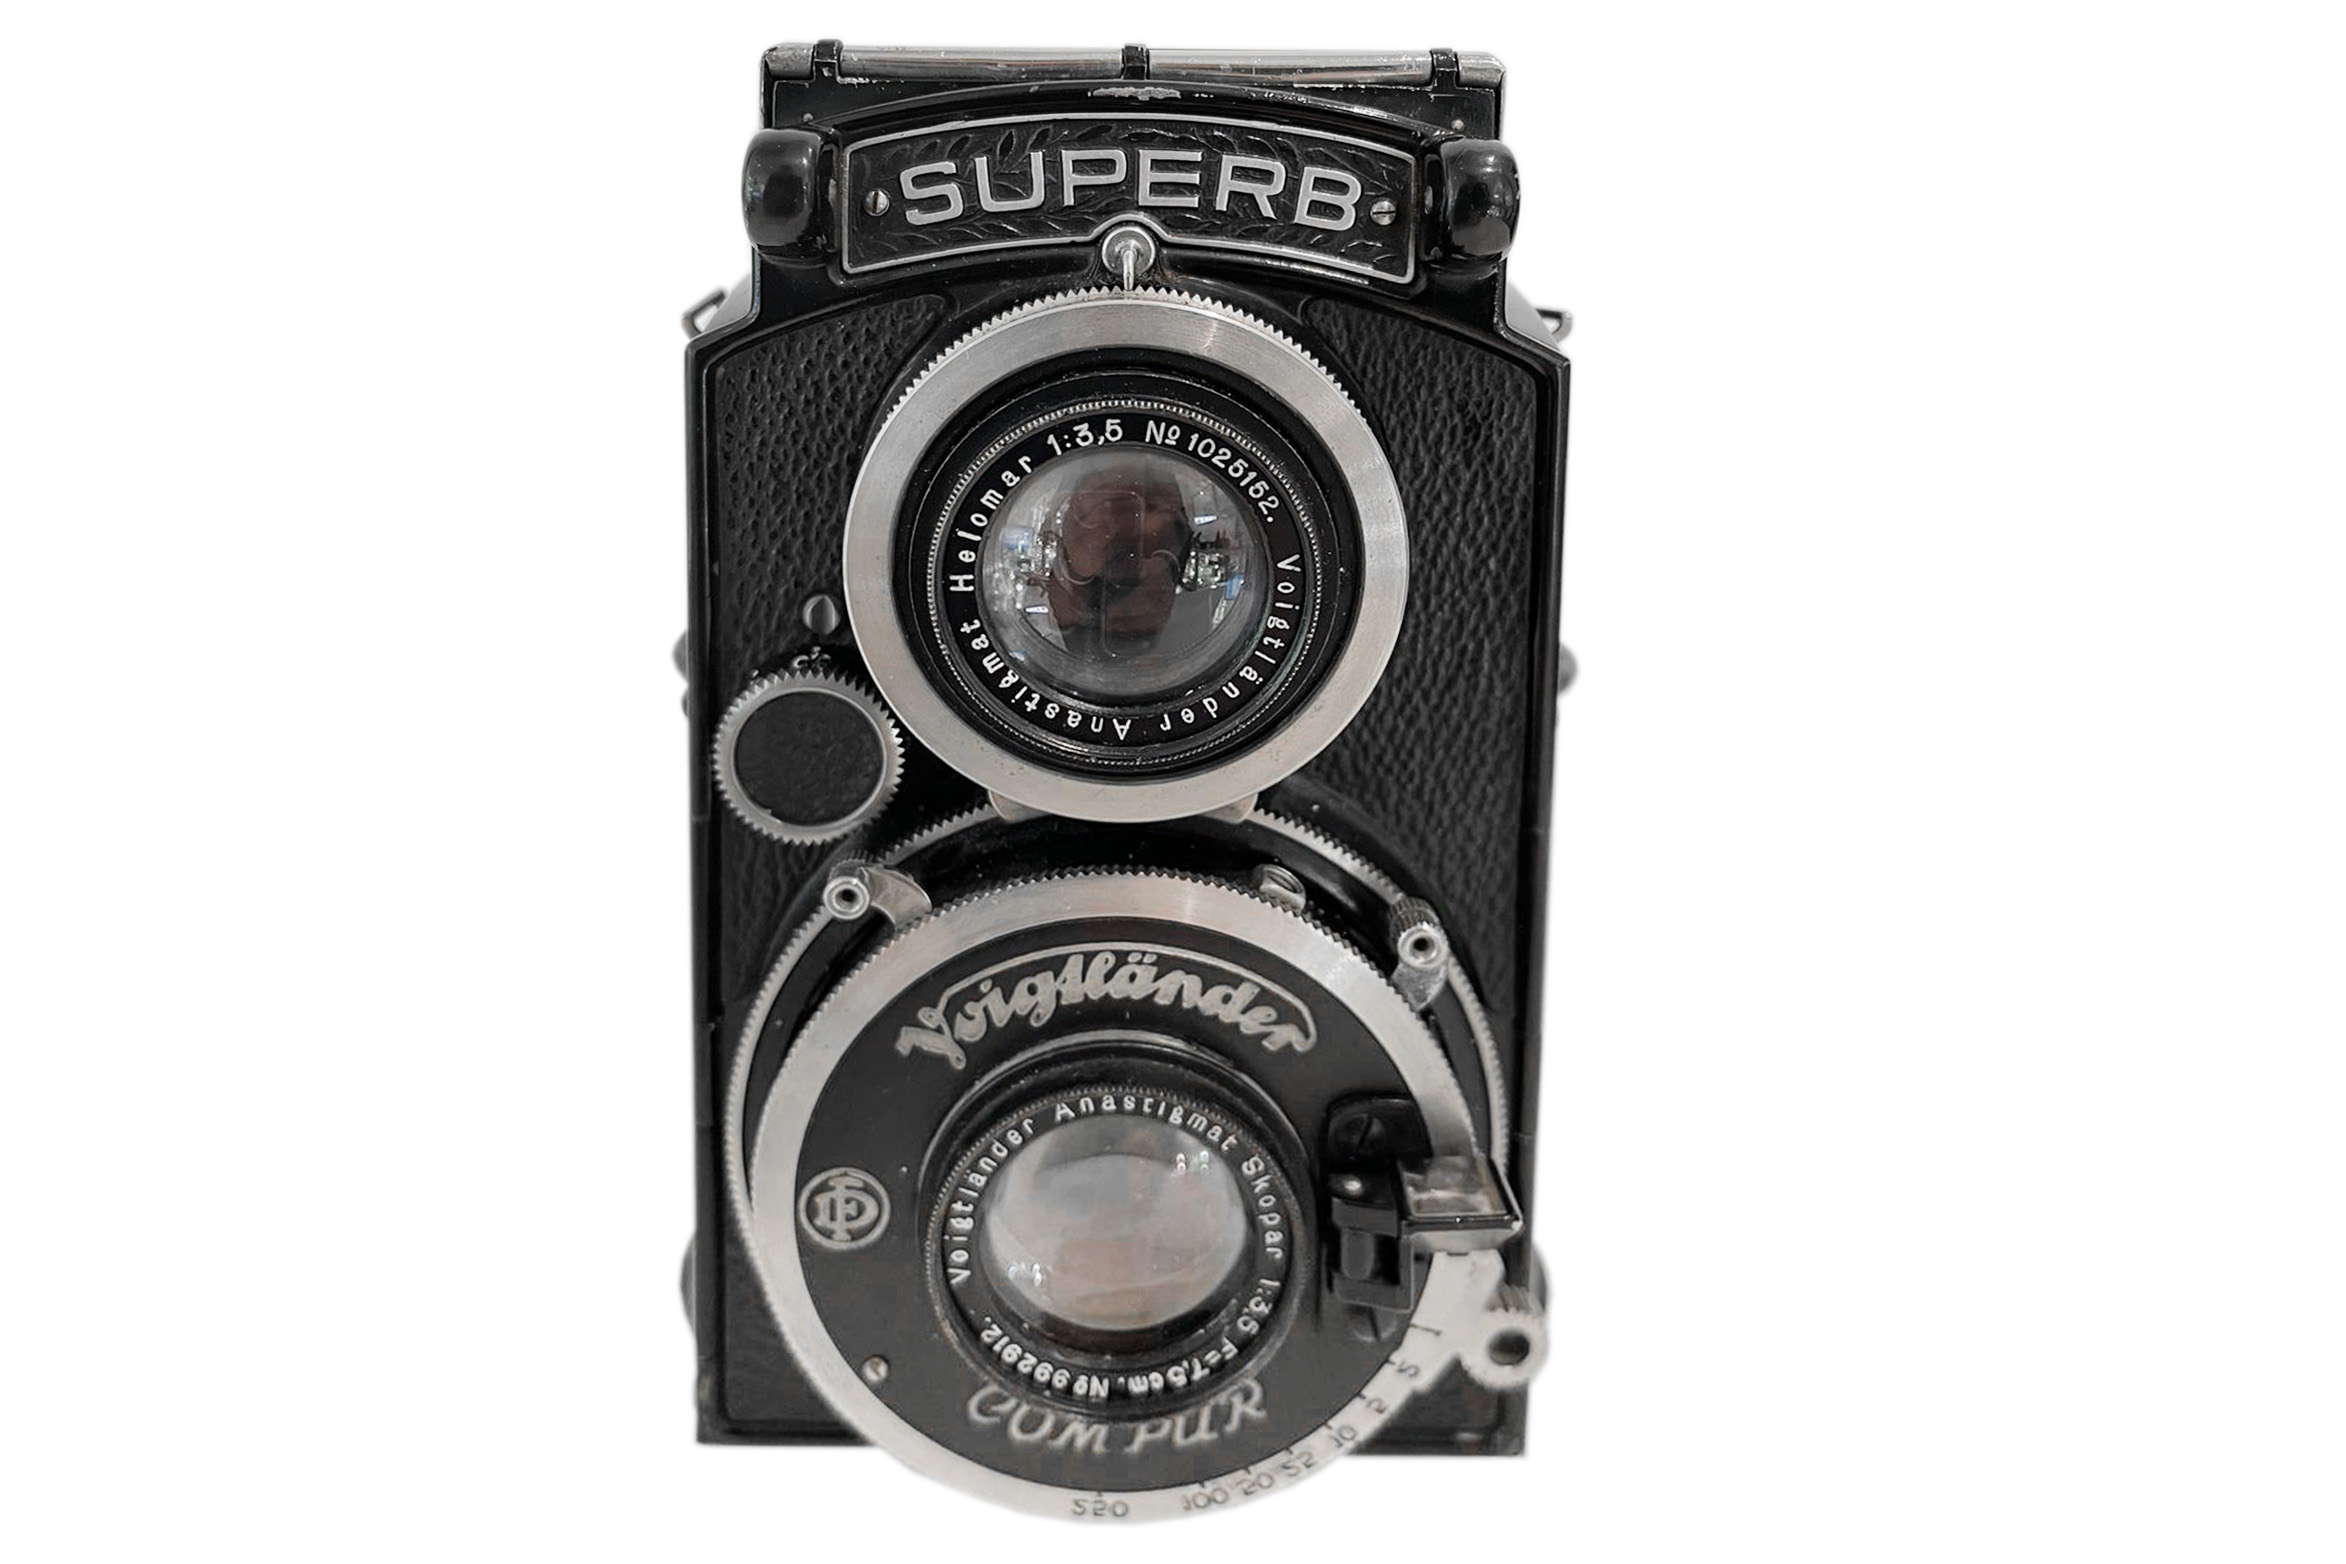 A Voigtlander Superb TLR Camera - Image 3 of 3